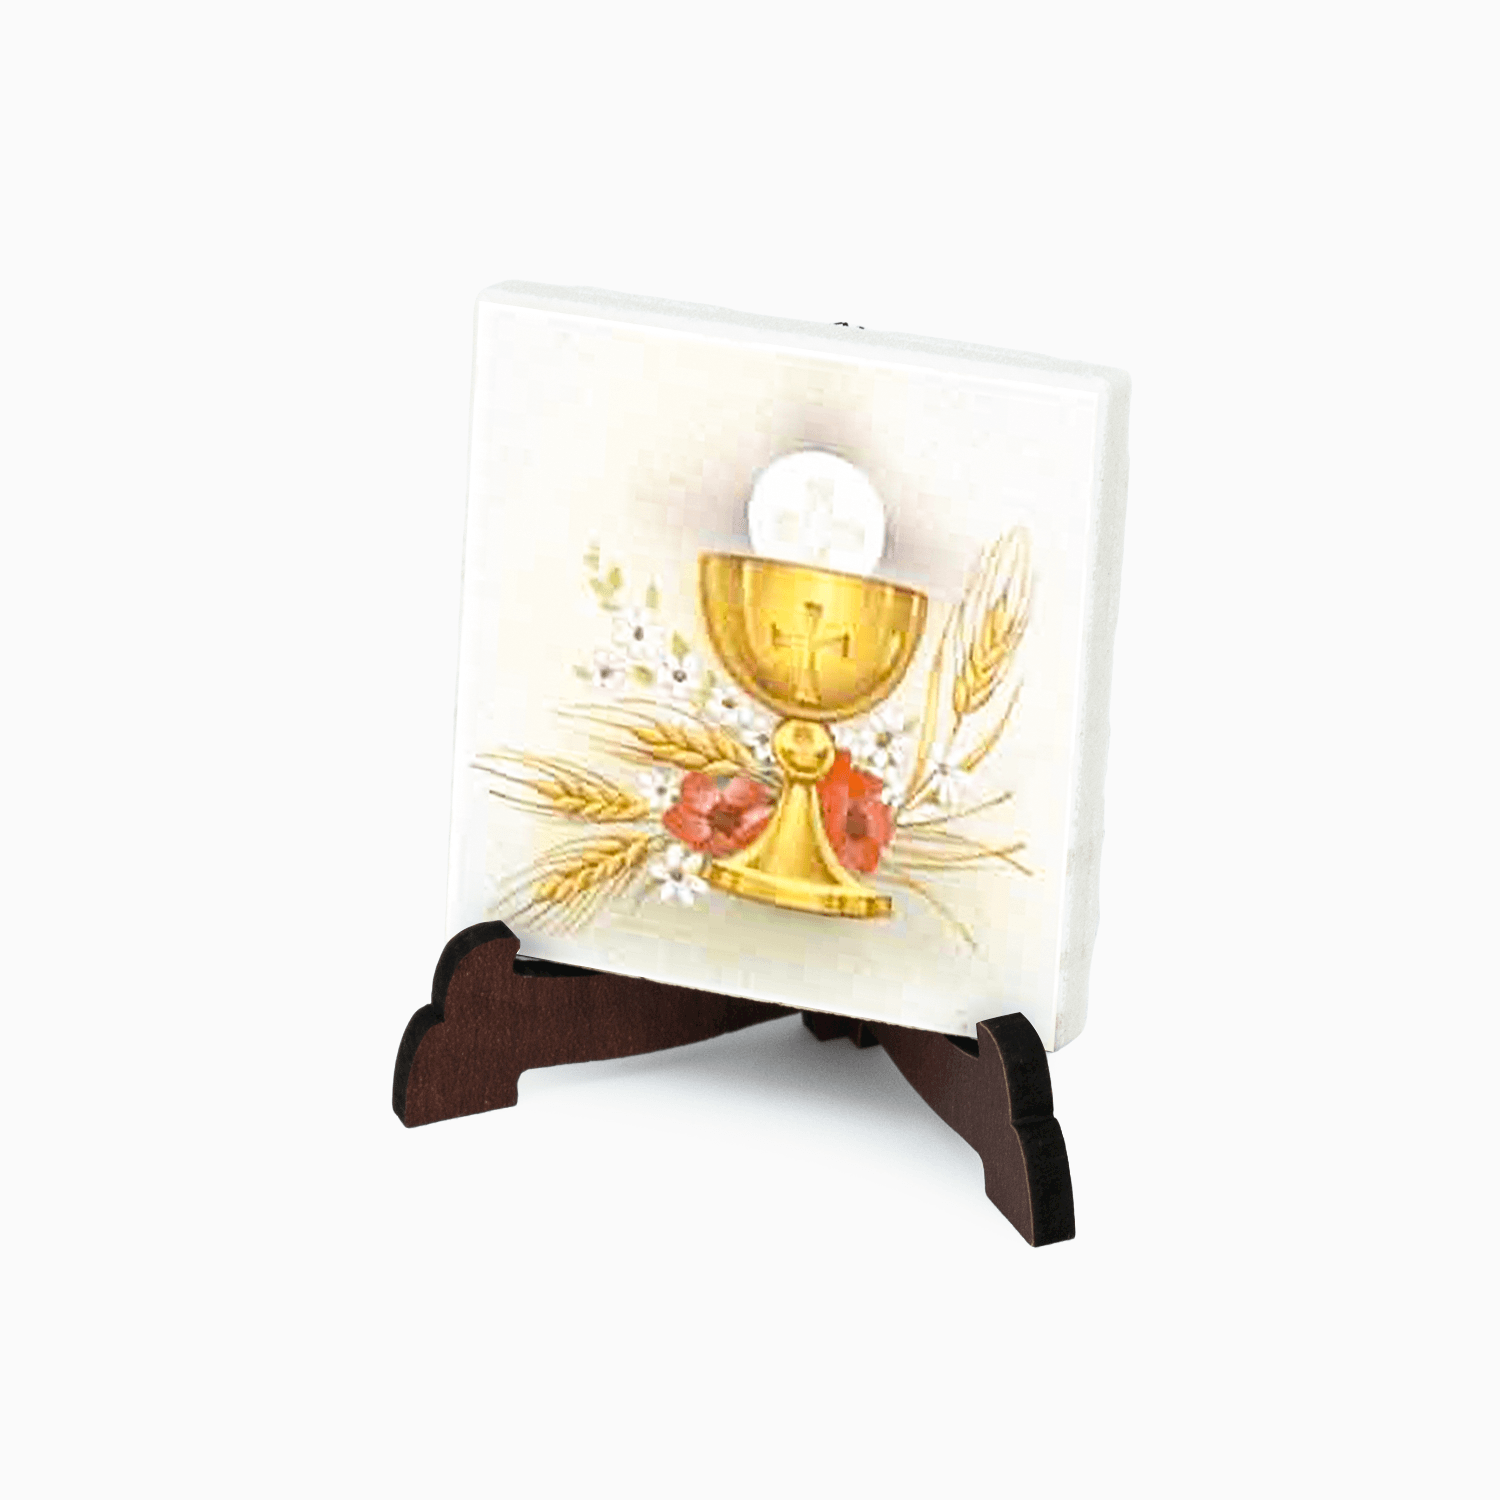 Confettata Magnete Sacro in Gres Porcellanato Decorata con supporto da Appoggio e Scatola Magneti Albalu Bomboniere Eucarestia  